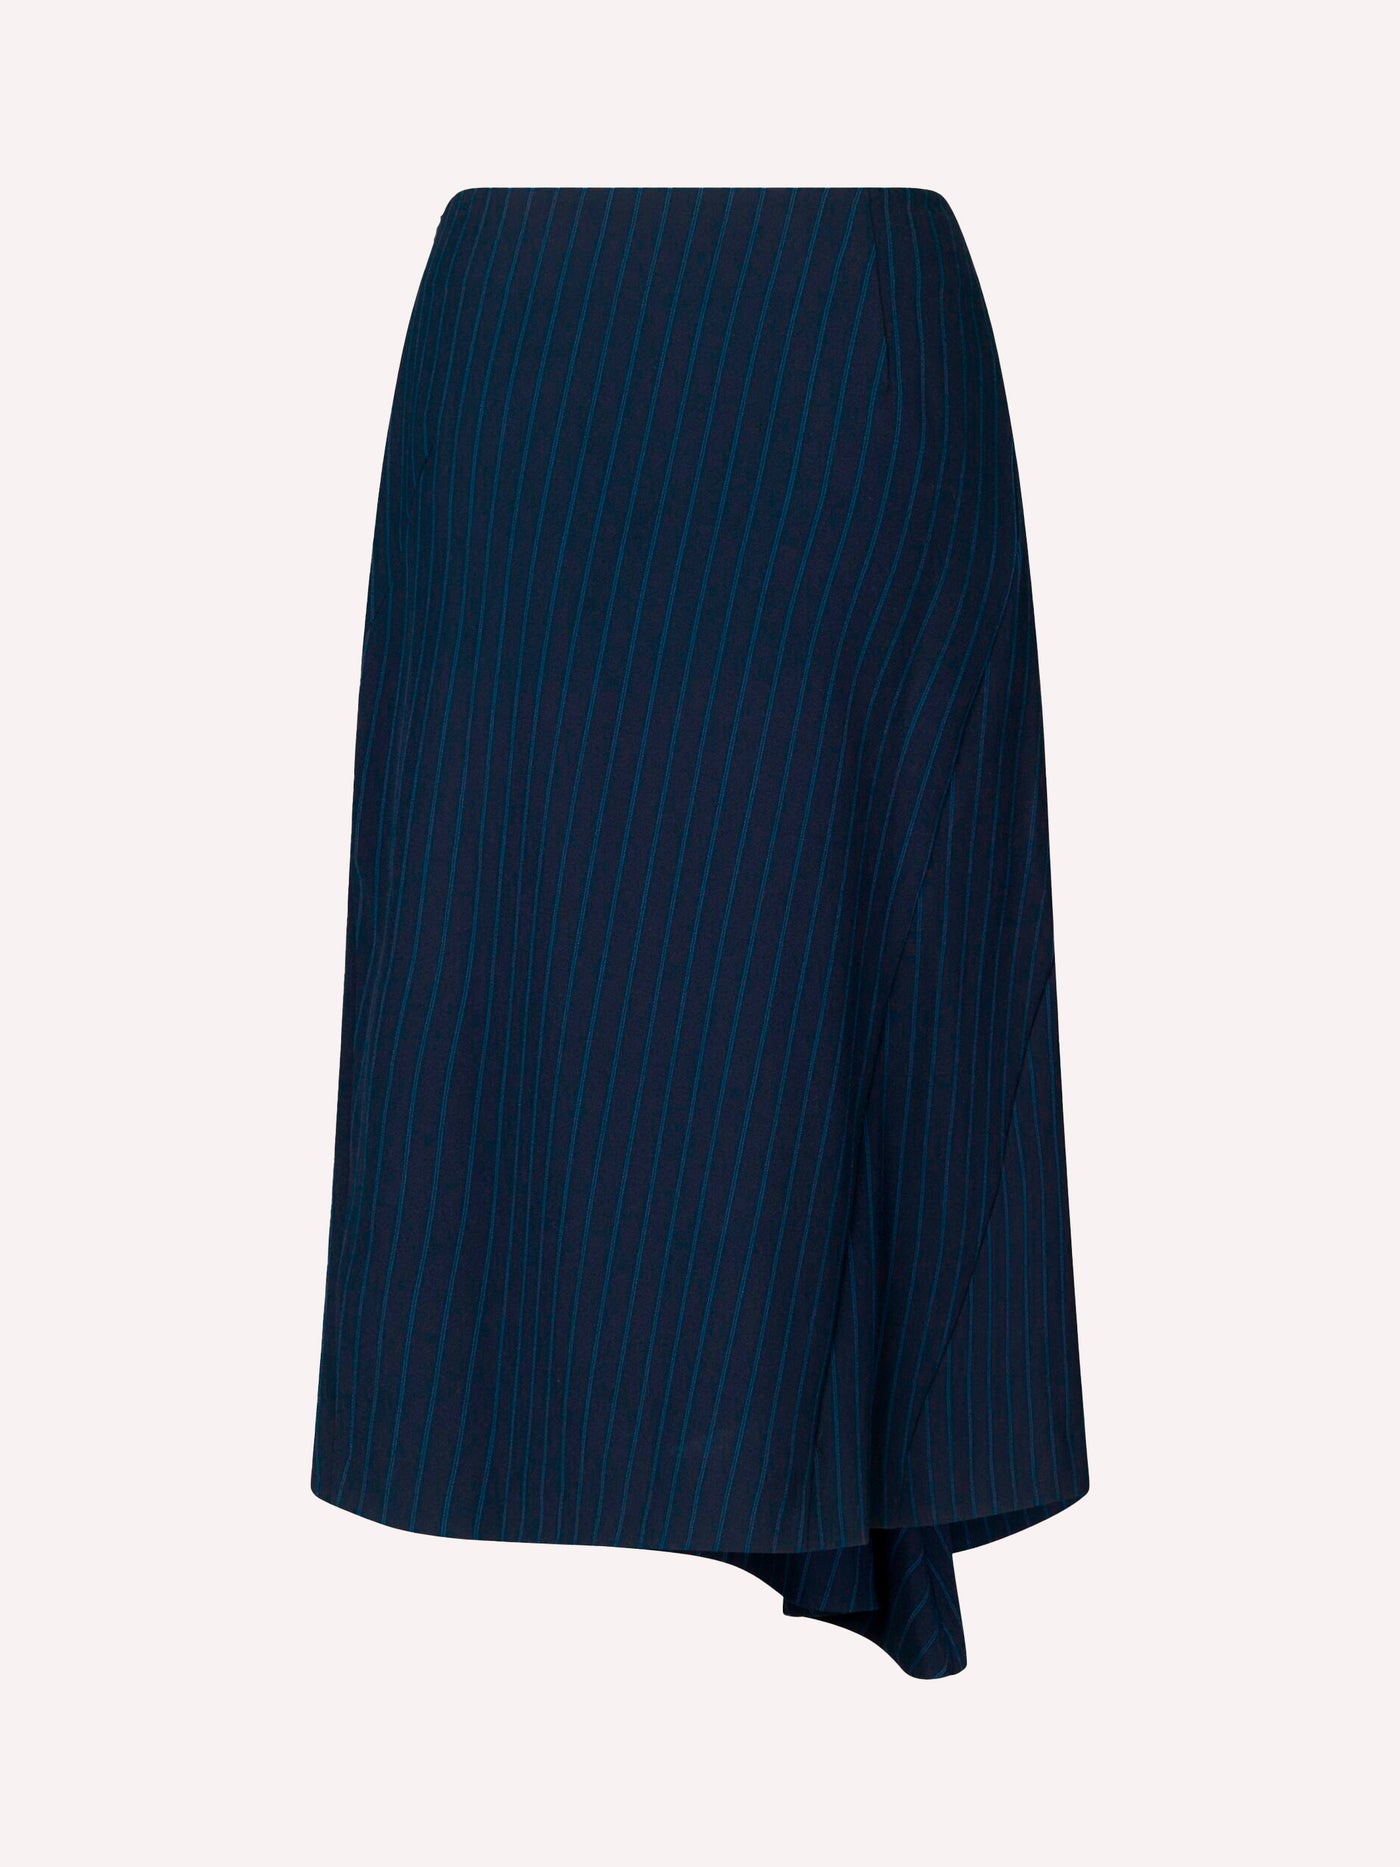 Sephira skirt, dark blue